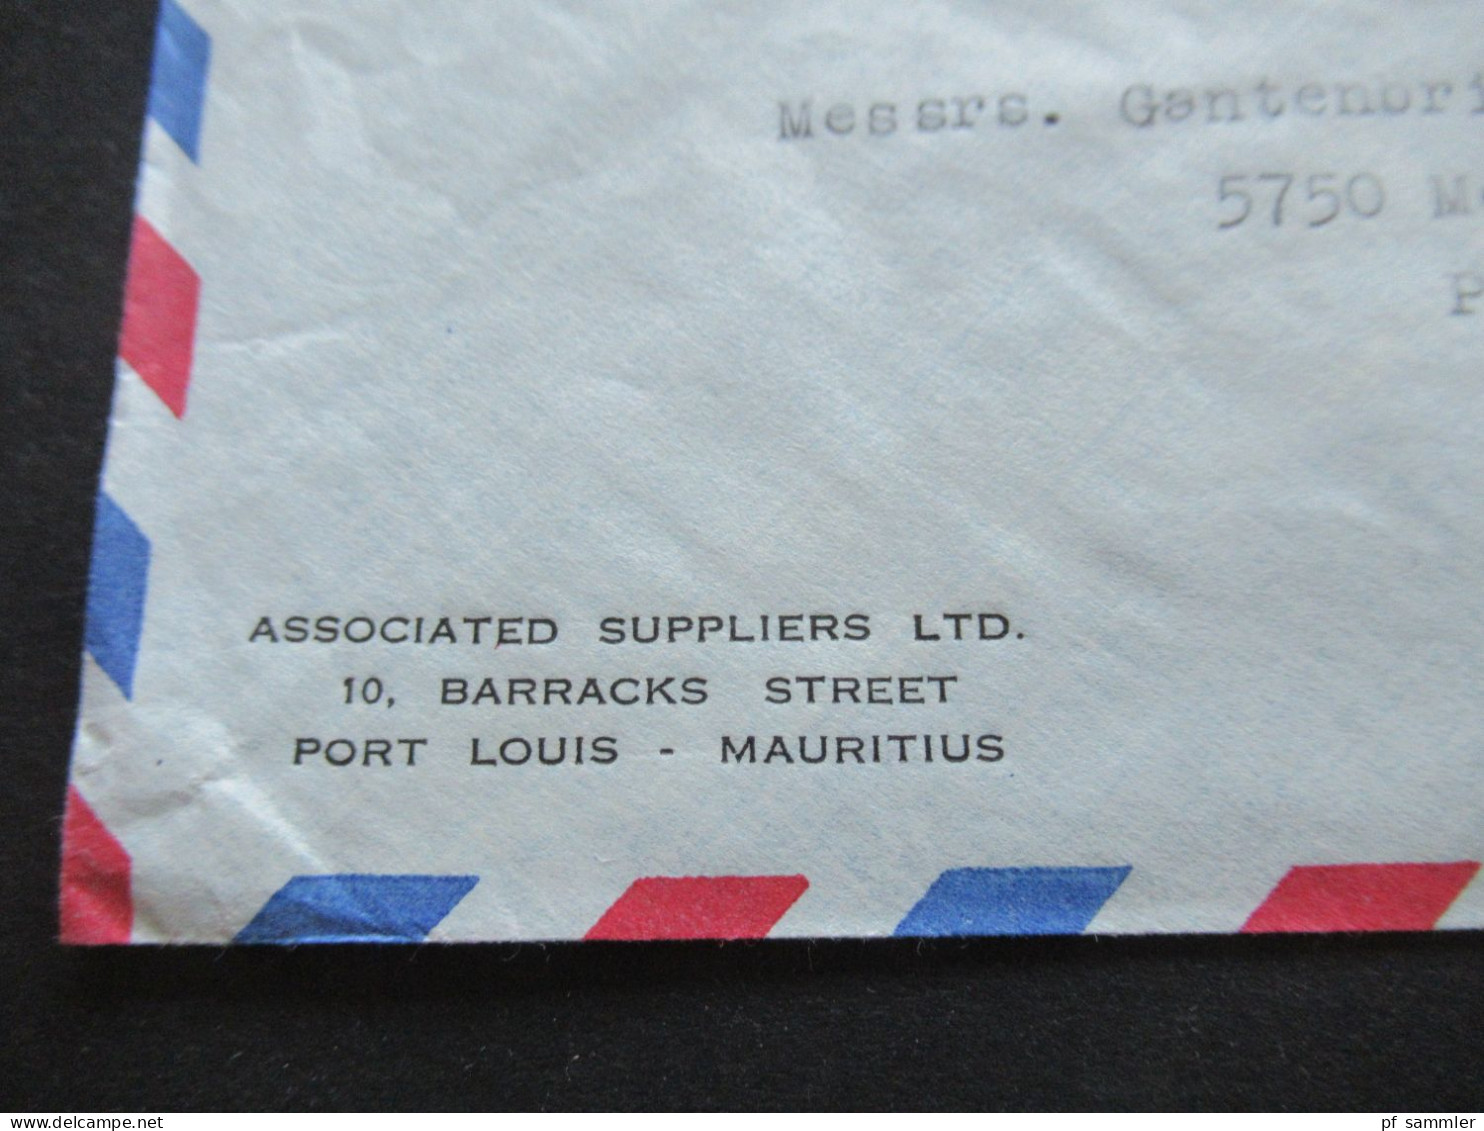 GB Kolonie Mauritius Um 1964 By Air Mail Luftpost Insgesamt 5 Belege / Firmenumschläge Port Louis Mauritius - Maurice (...-1967)